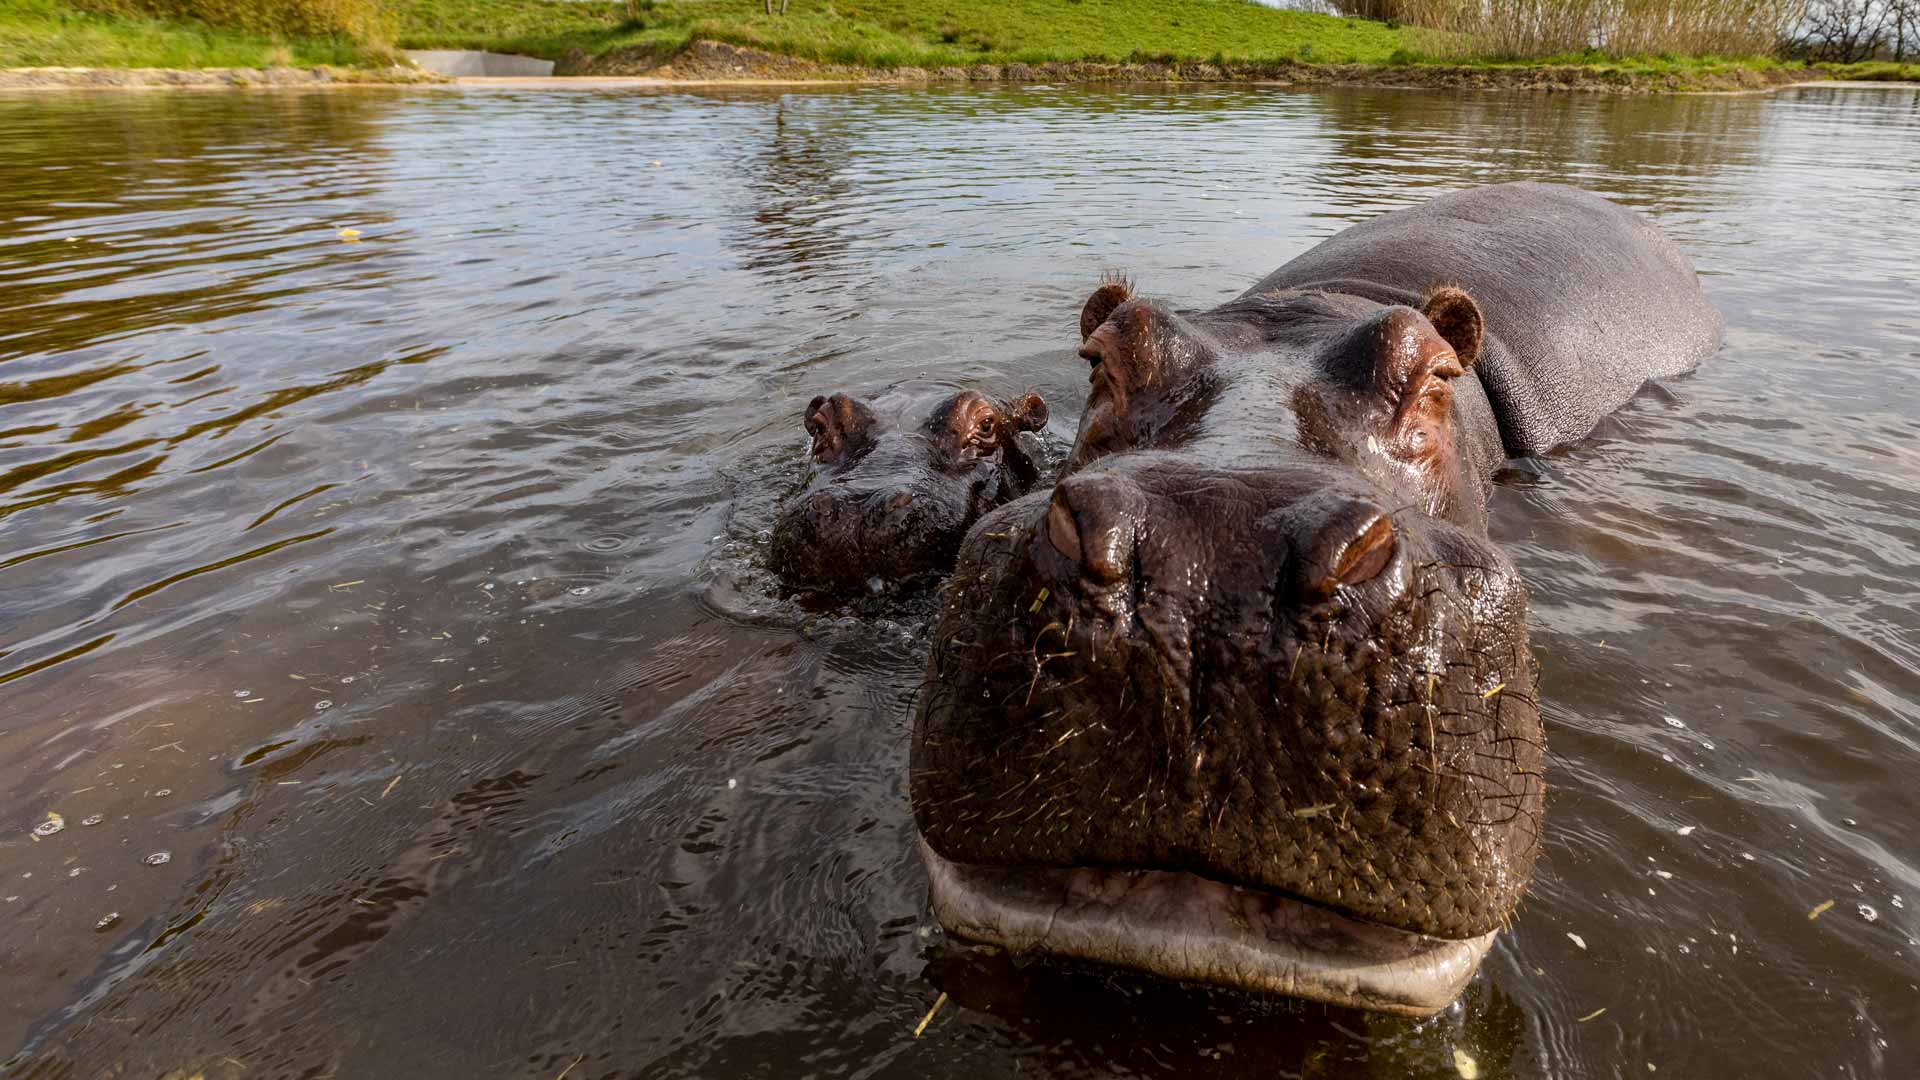 maman hippopotame dans l'eau avec son petit